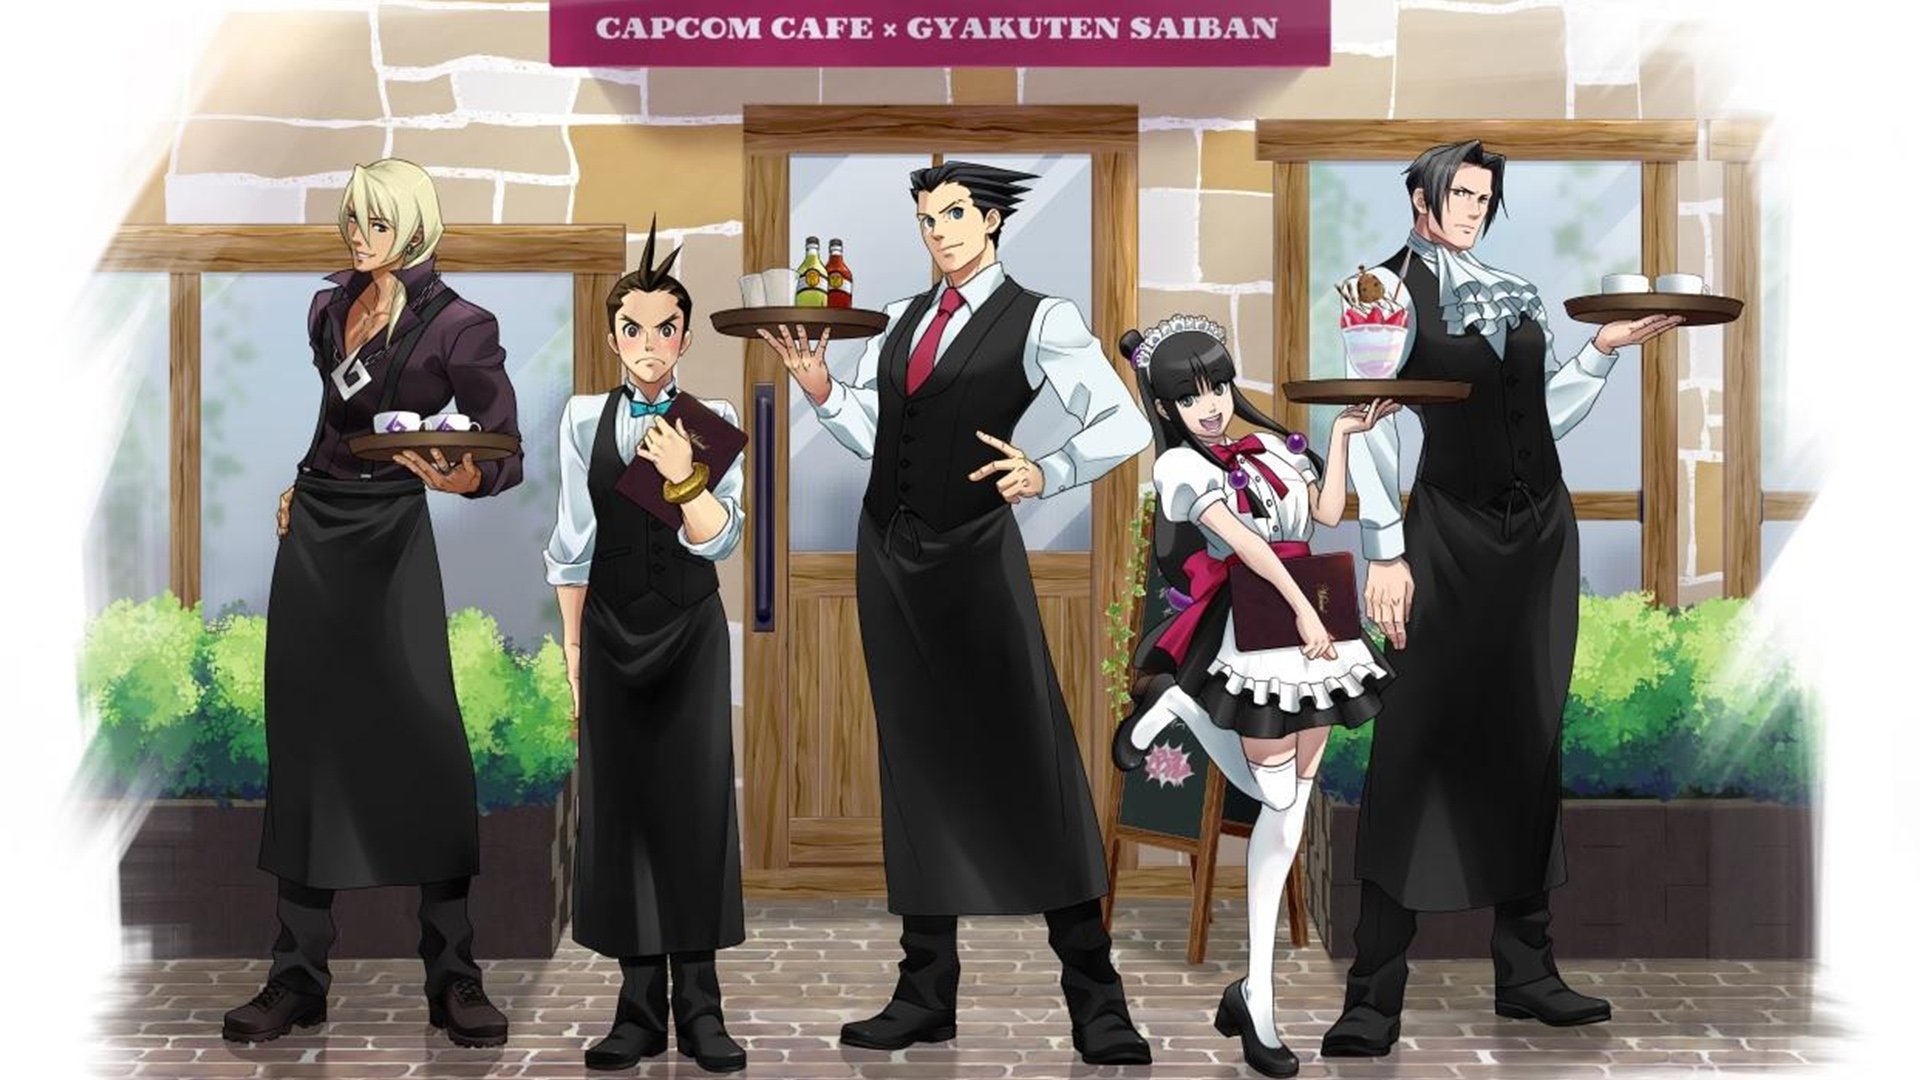 New artwork released for upcoming Ace Attorney Capcom Café theme - Nintendo...